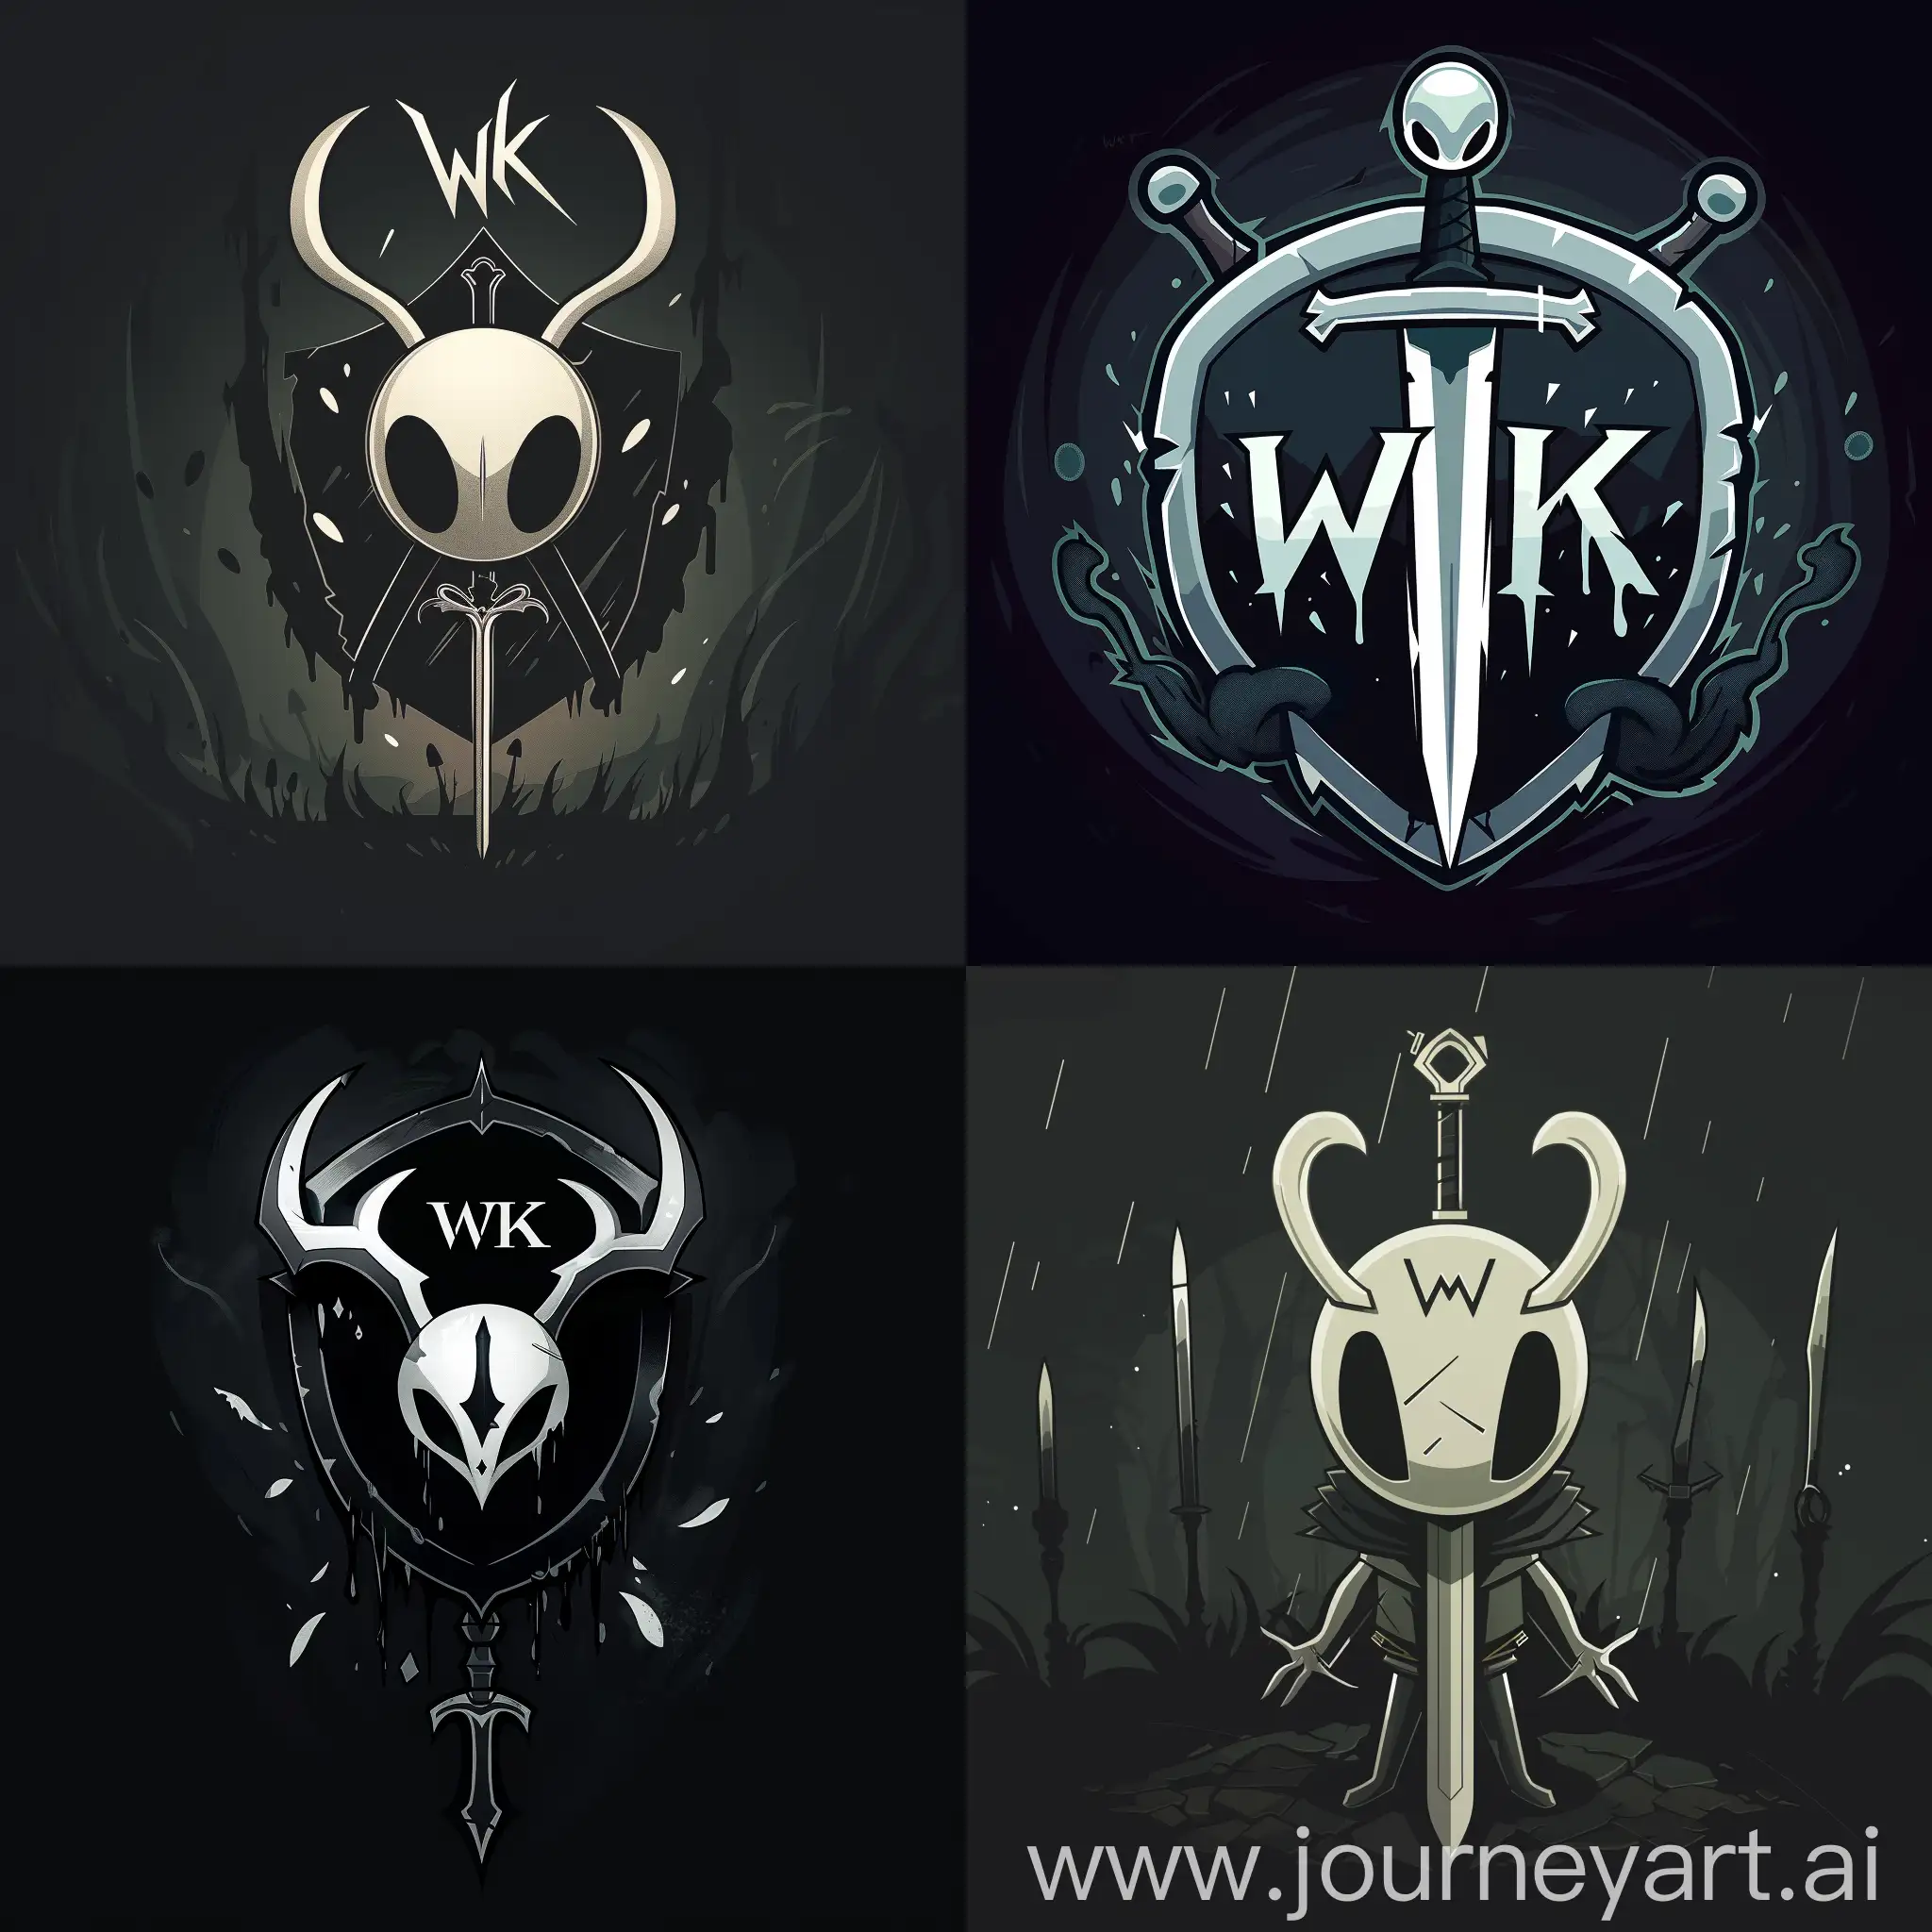 Логотипп "WK" White Knight для игры Hollow Knight, стилизации логотипа в виде символического щита или меча с элементами, характерными для игры Hollow Knight, такими как темнота и загадочность, темные тона цветов для подчеркивания атмосферы игры